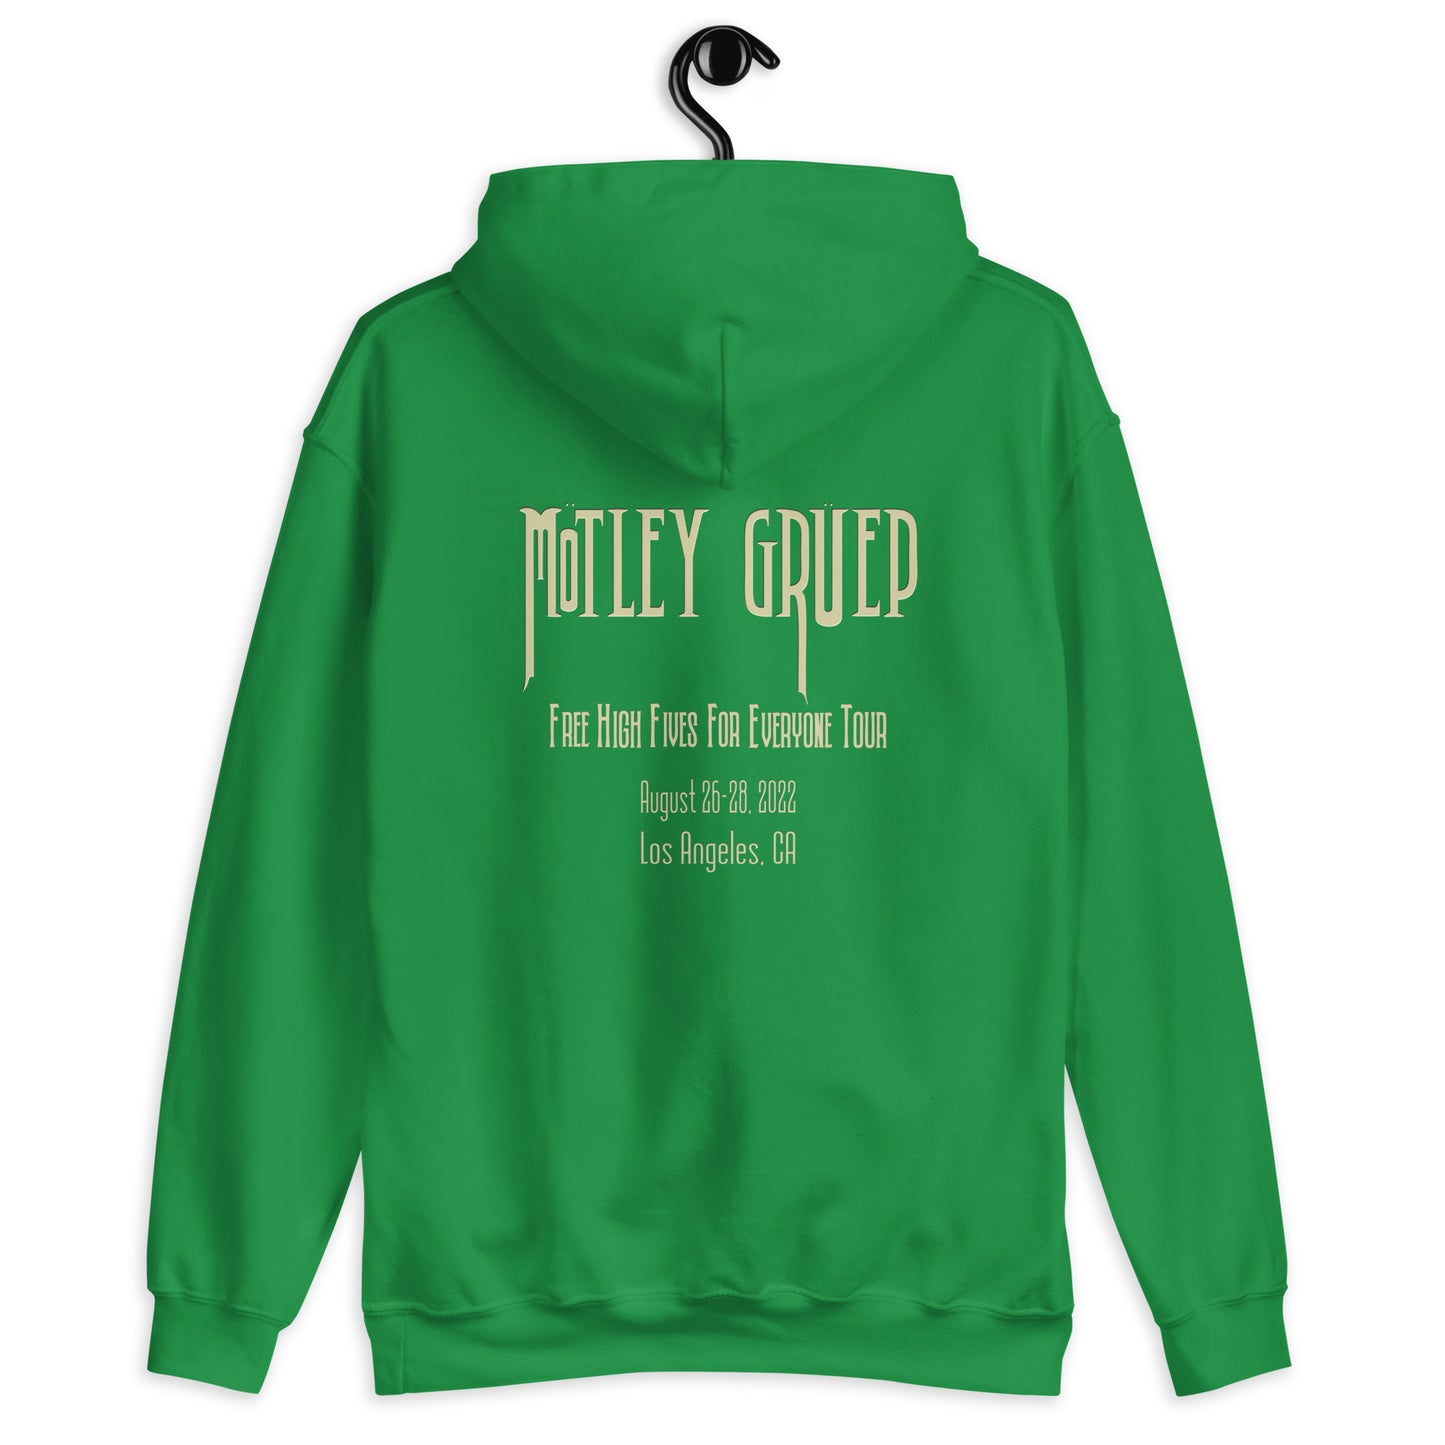 Motley Gruep - Heavy Blend Hoodie - Gildan 18500